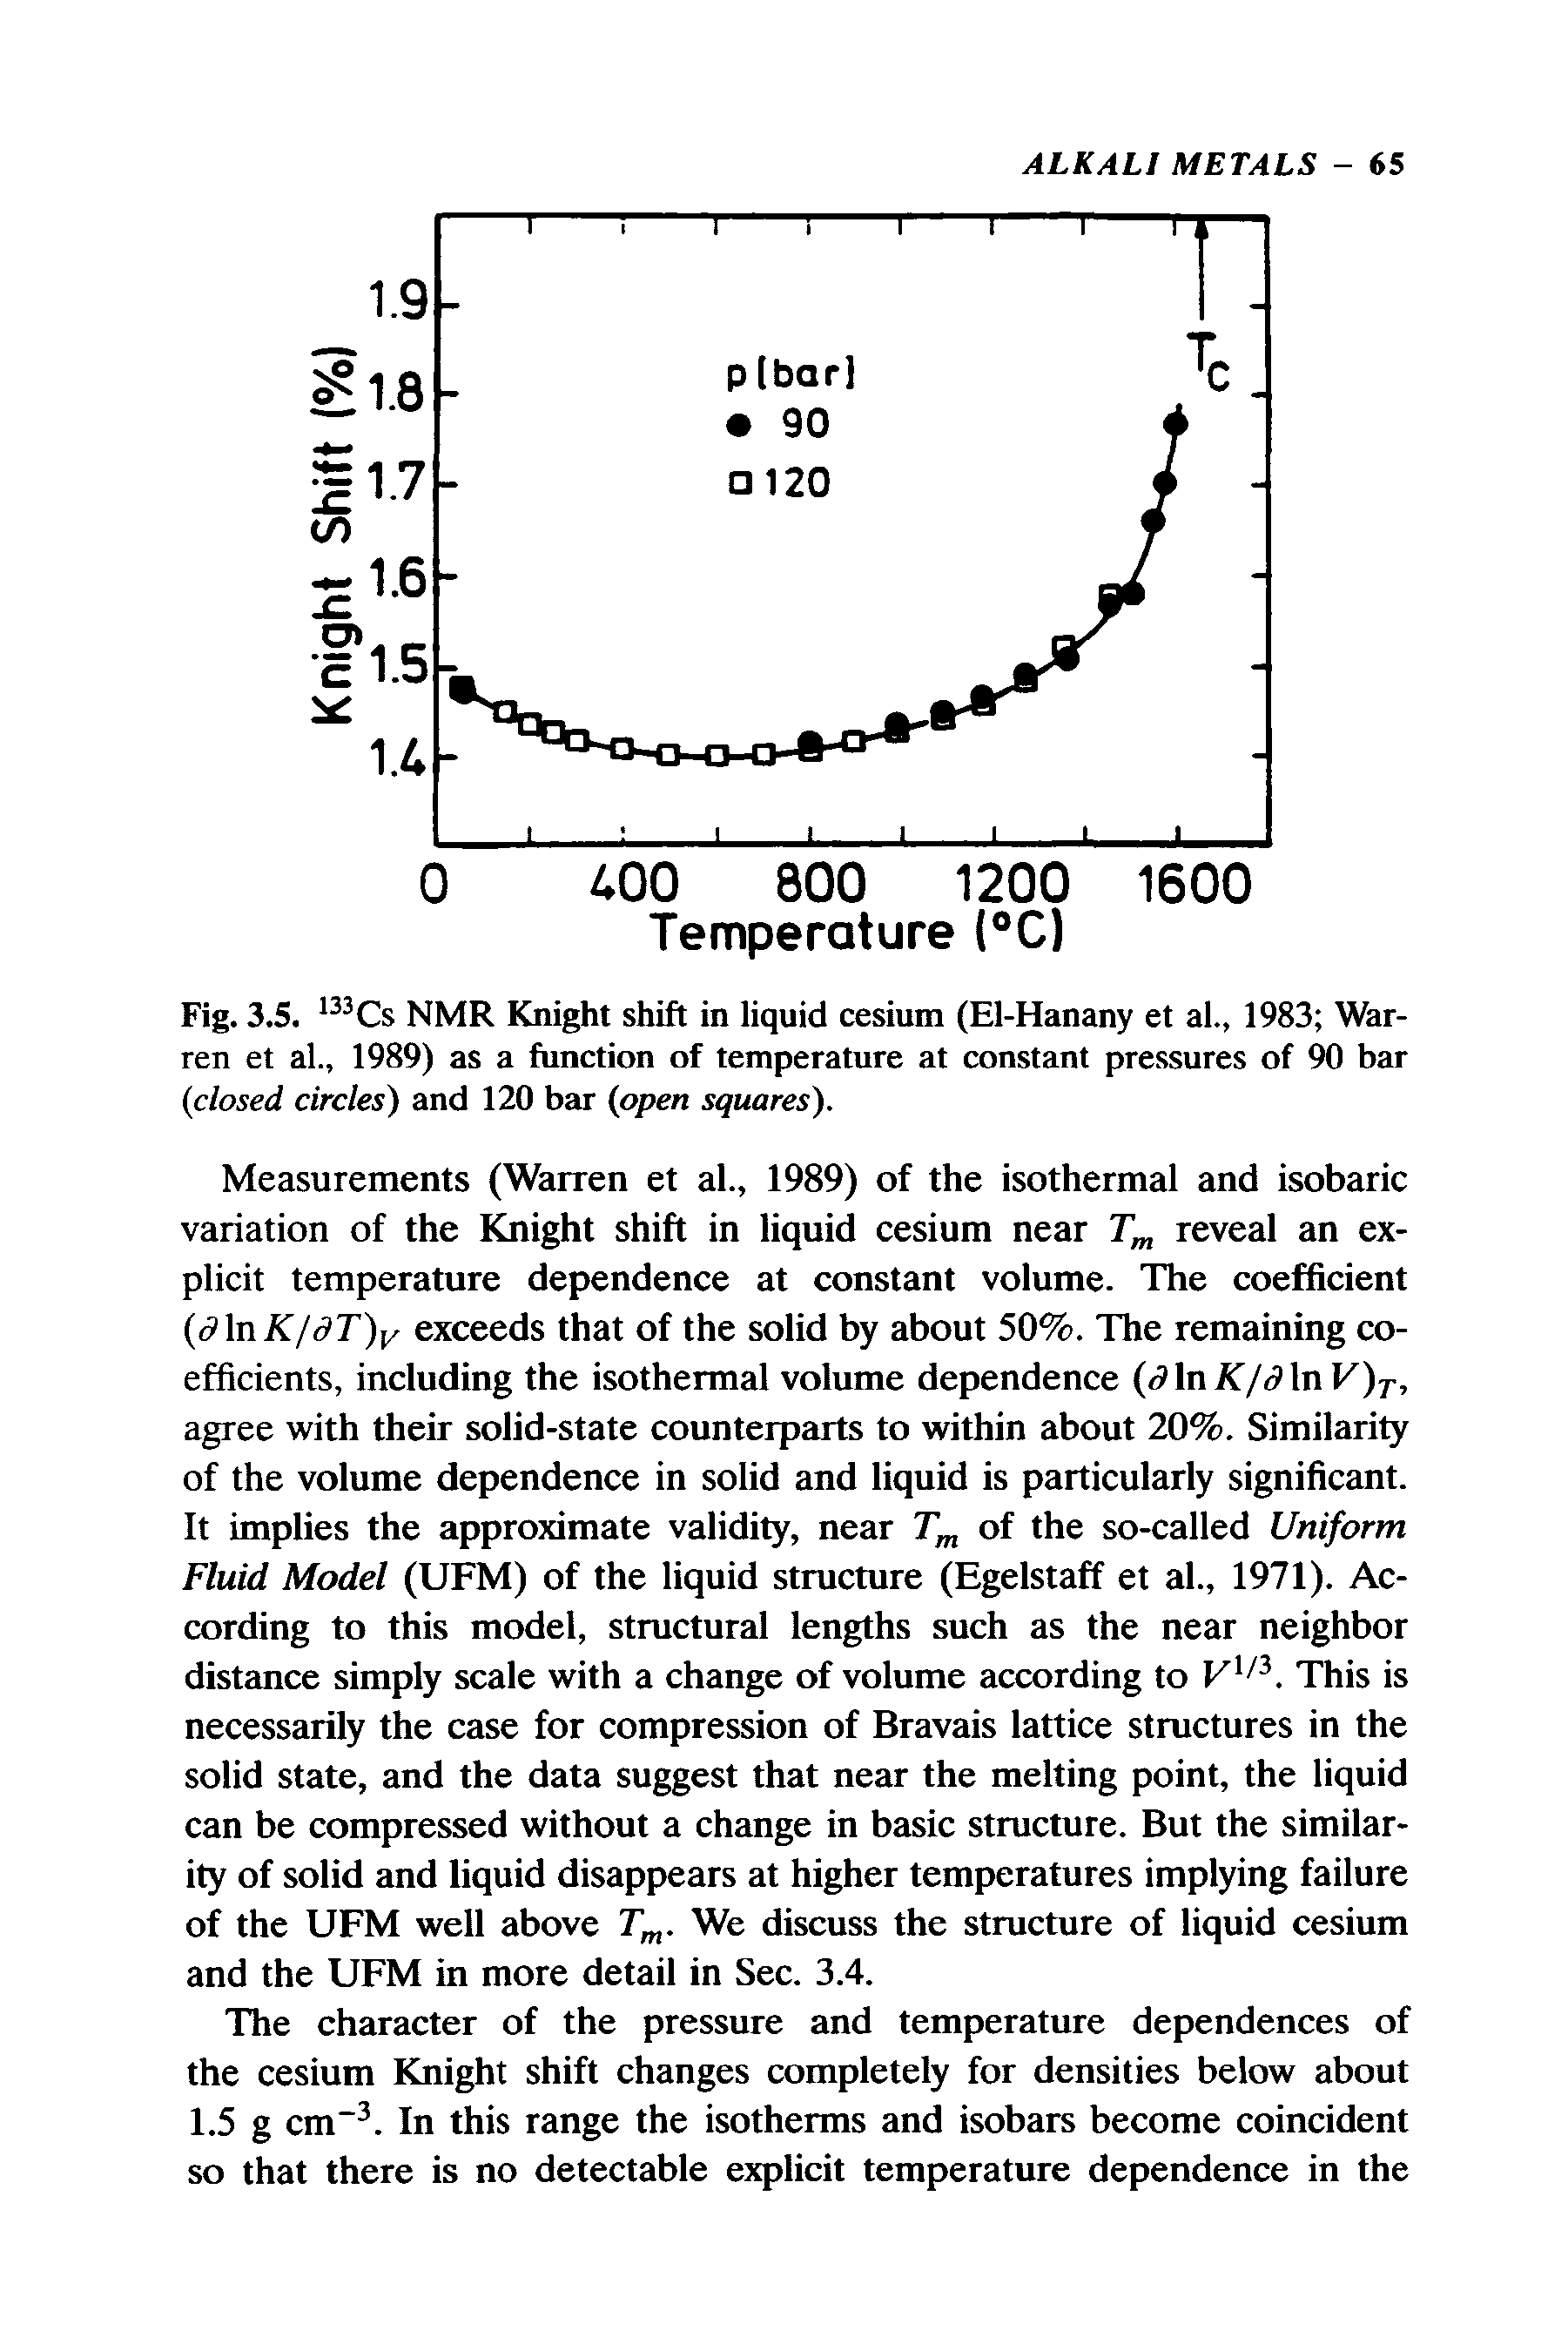 Fig. 3.5. NMR Knight shift in liquid cesium (El-Hanany et al., 1983 Warren et al., 1989) as a function of temperature at constant pressures of 90 bar closed circles) and 120 bar open squares).